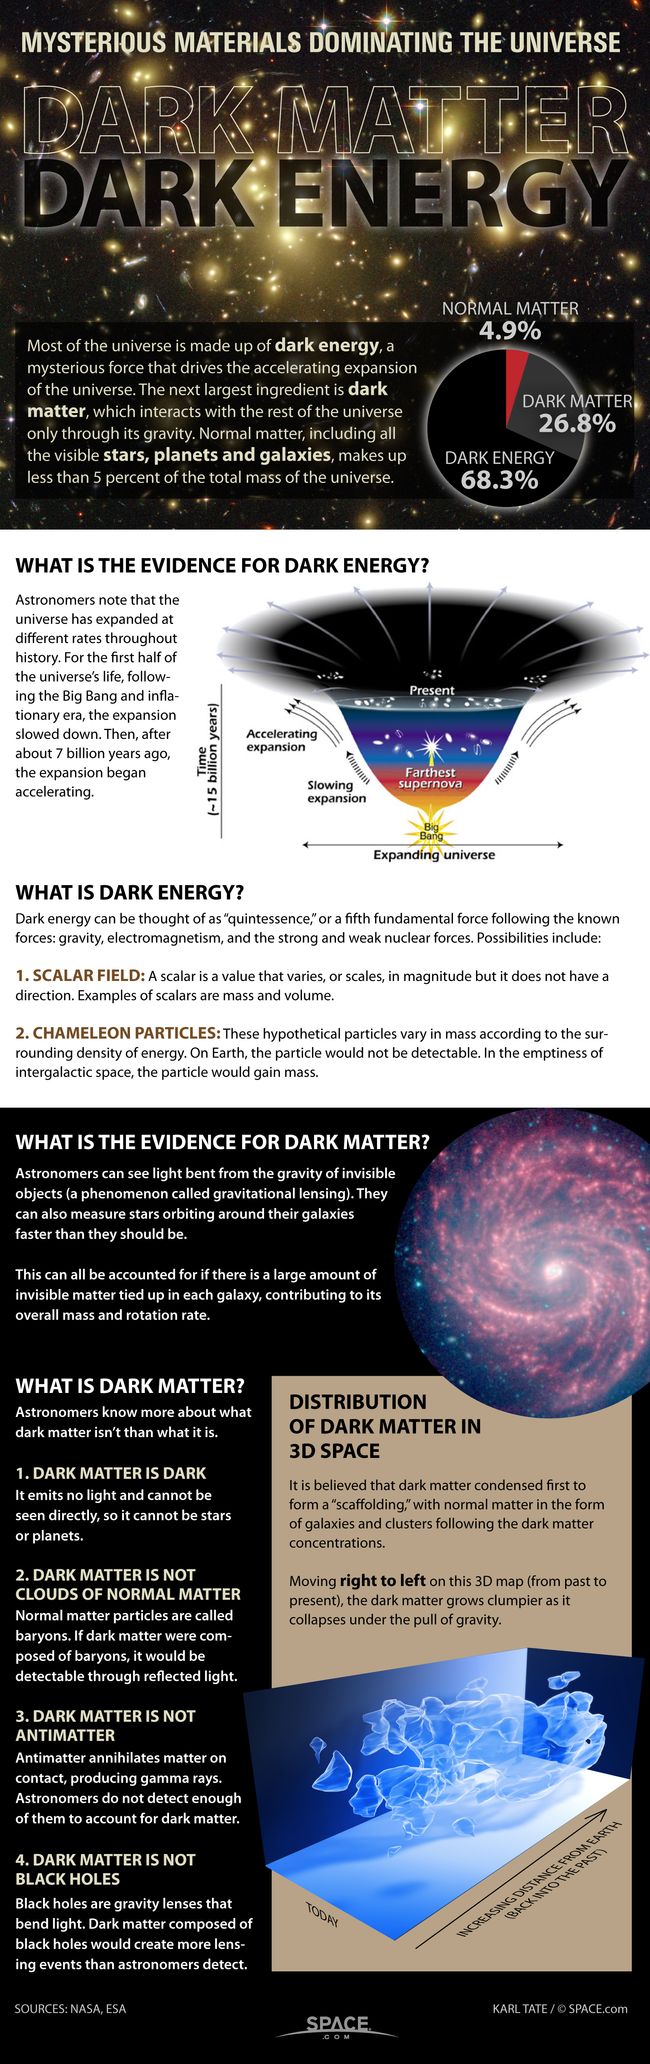 what is dark matter